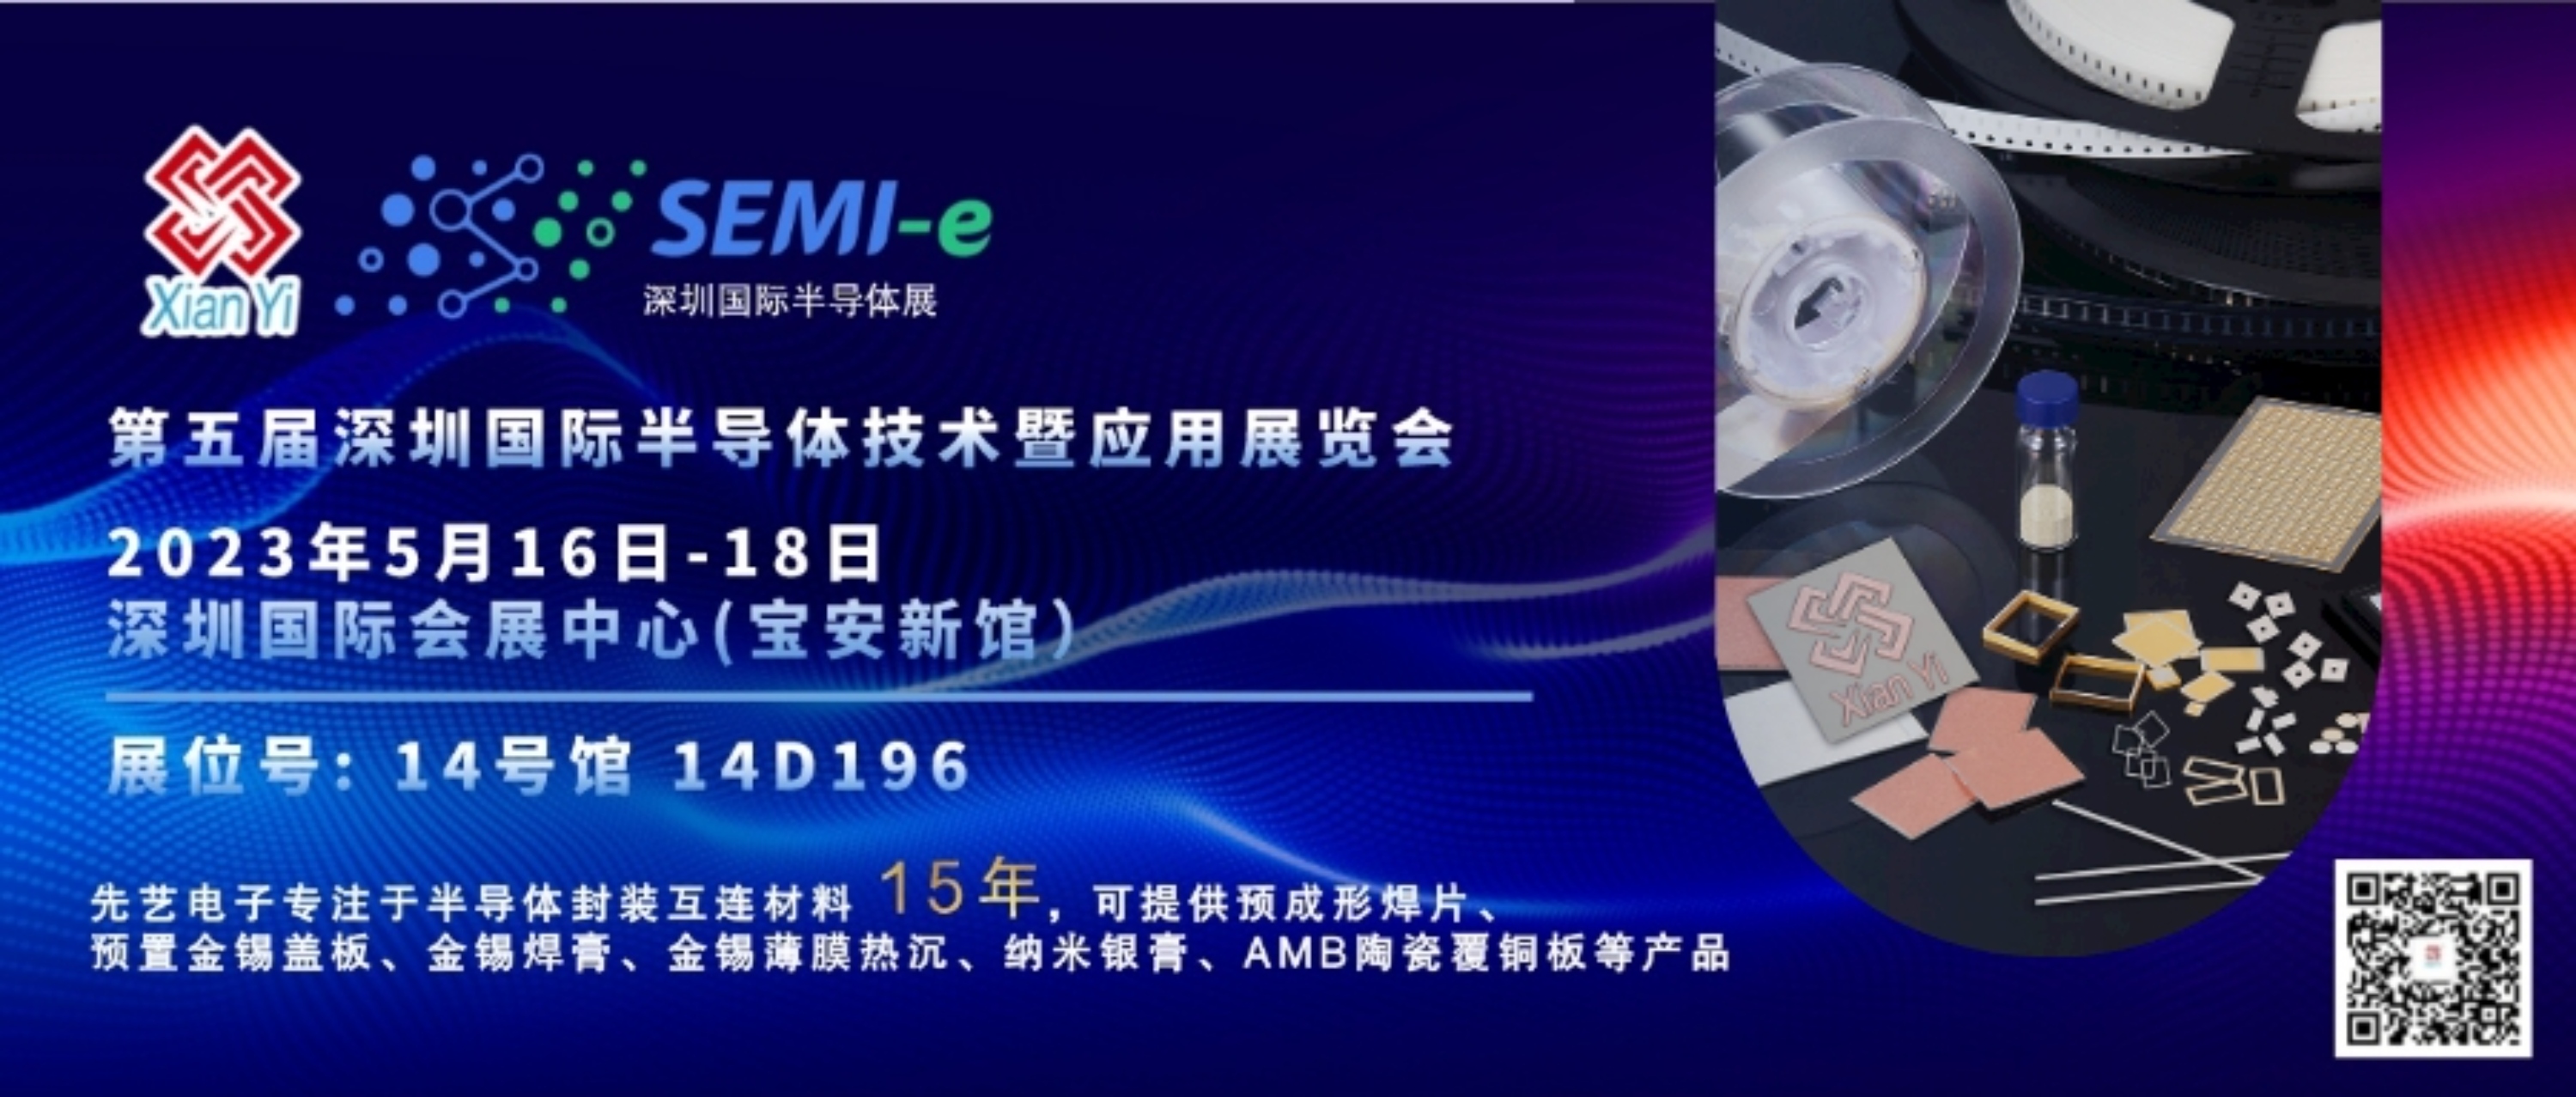 预告丨威尼斯欢乐娱人城3328与您相约第五届深圳国际半导体技术暨应用展览会（SEMI-e 2023）